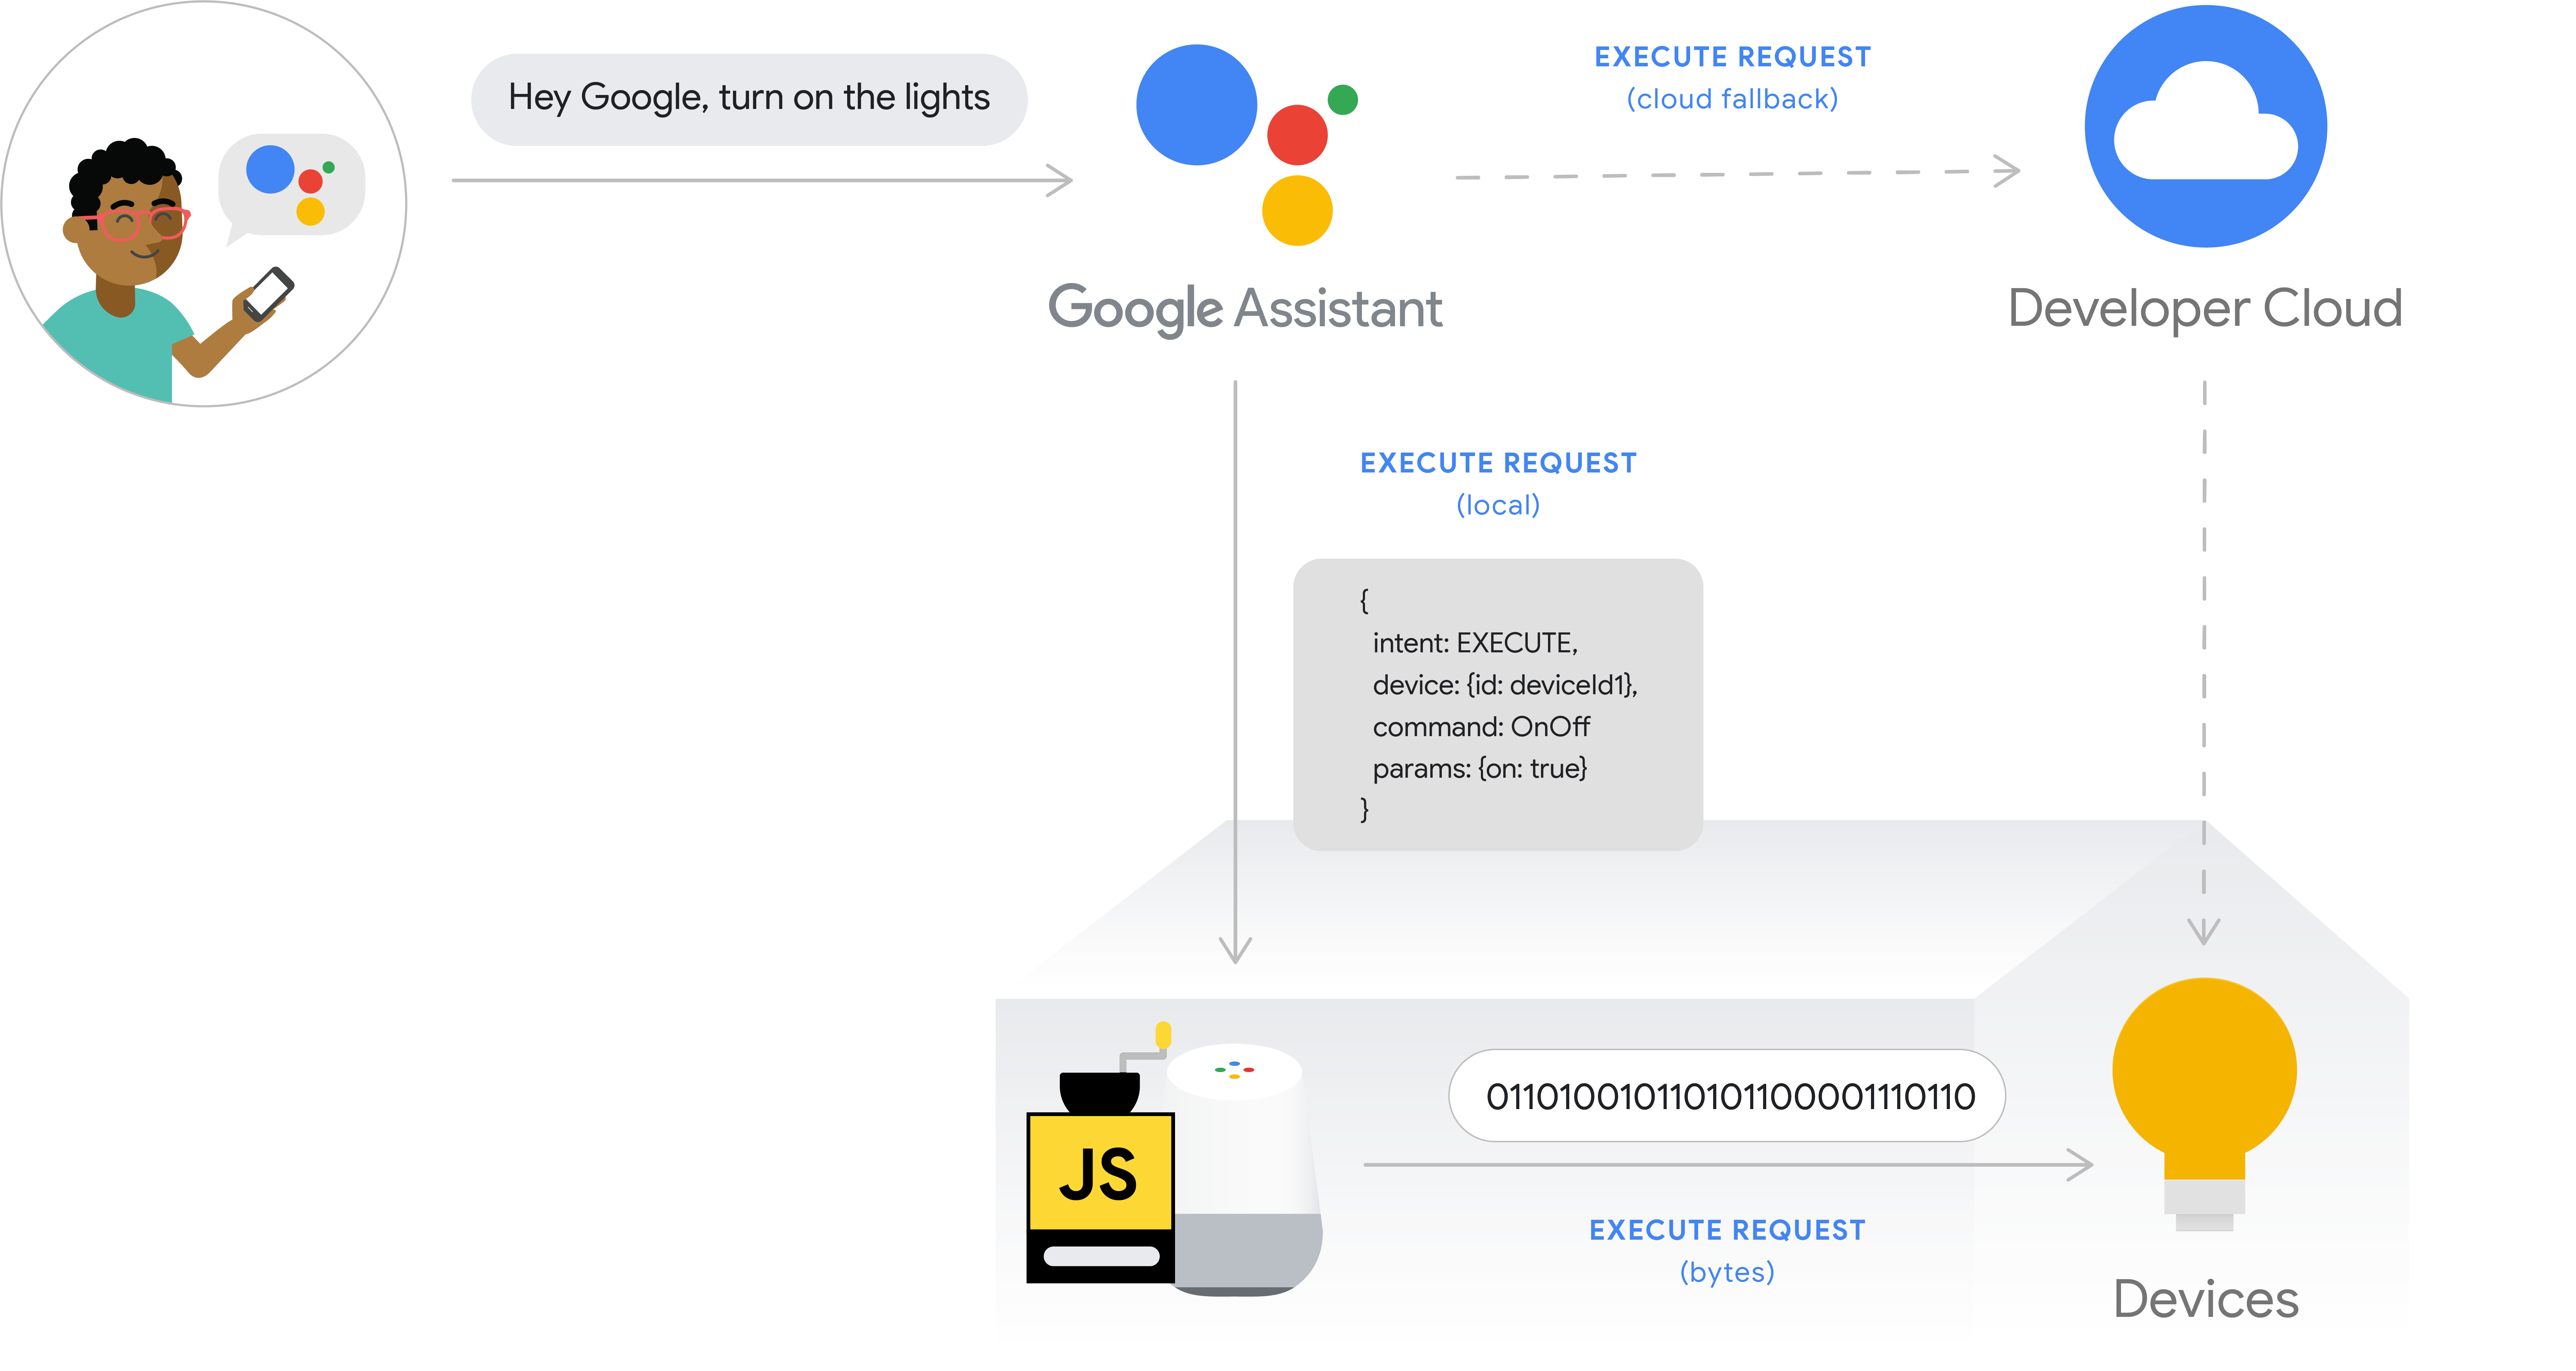 รูปนี้แสดงโฟลว์การดำเนินการสำหรับ Fulfillment ภายในเครื่อง เส้นทางการดำเนินการบันทึกความตั้งใจของผู้ใช้จากโทรศัพท์ด้วย Google Assistant จากนั้น Google Cloud จะประมวลผล Intent ของผู้ใช้ จากนั้นจะประมวลผลภายในอุปกรณ์ Google Home และออกคำสั่งไปยังฮับอุปกรณ์โดยตรงหรือออกคำสั่งไปยังอุปกรณ์โดยตรง ระบบคลาวด์ของนักพัฒนาซอฟต์แวร์พร้อมให้ใช้งานเป็นระบบคลาวด์สำรอง